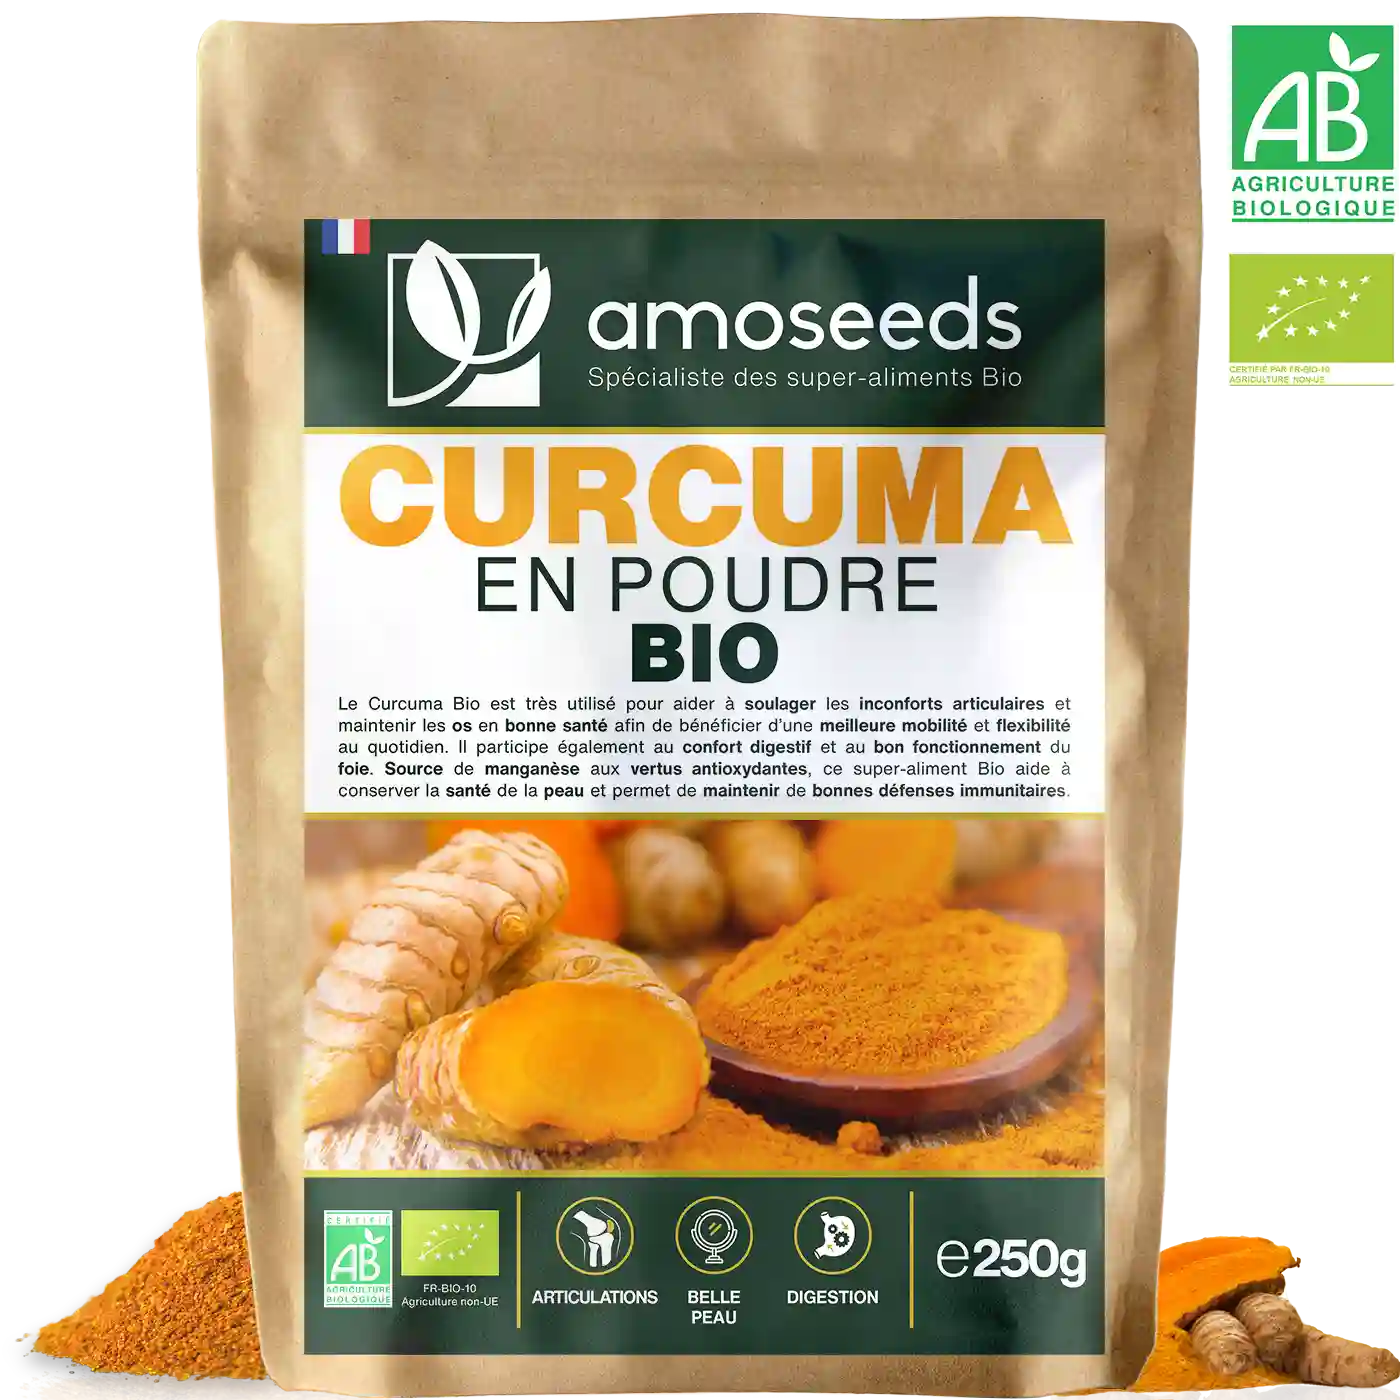 Curcuma Articulations Bio 200g Poudre - HERBESAN®